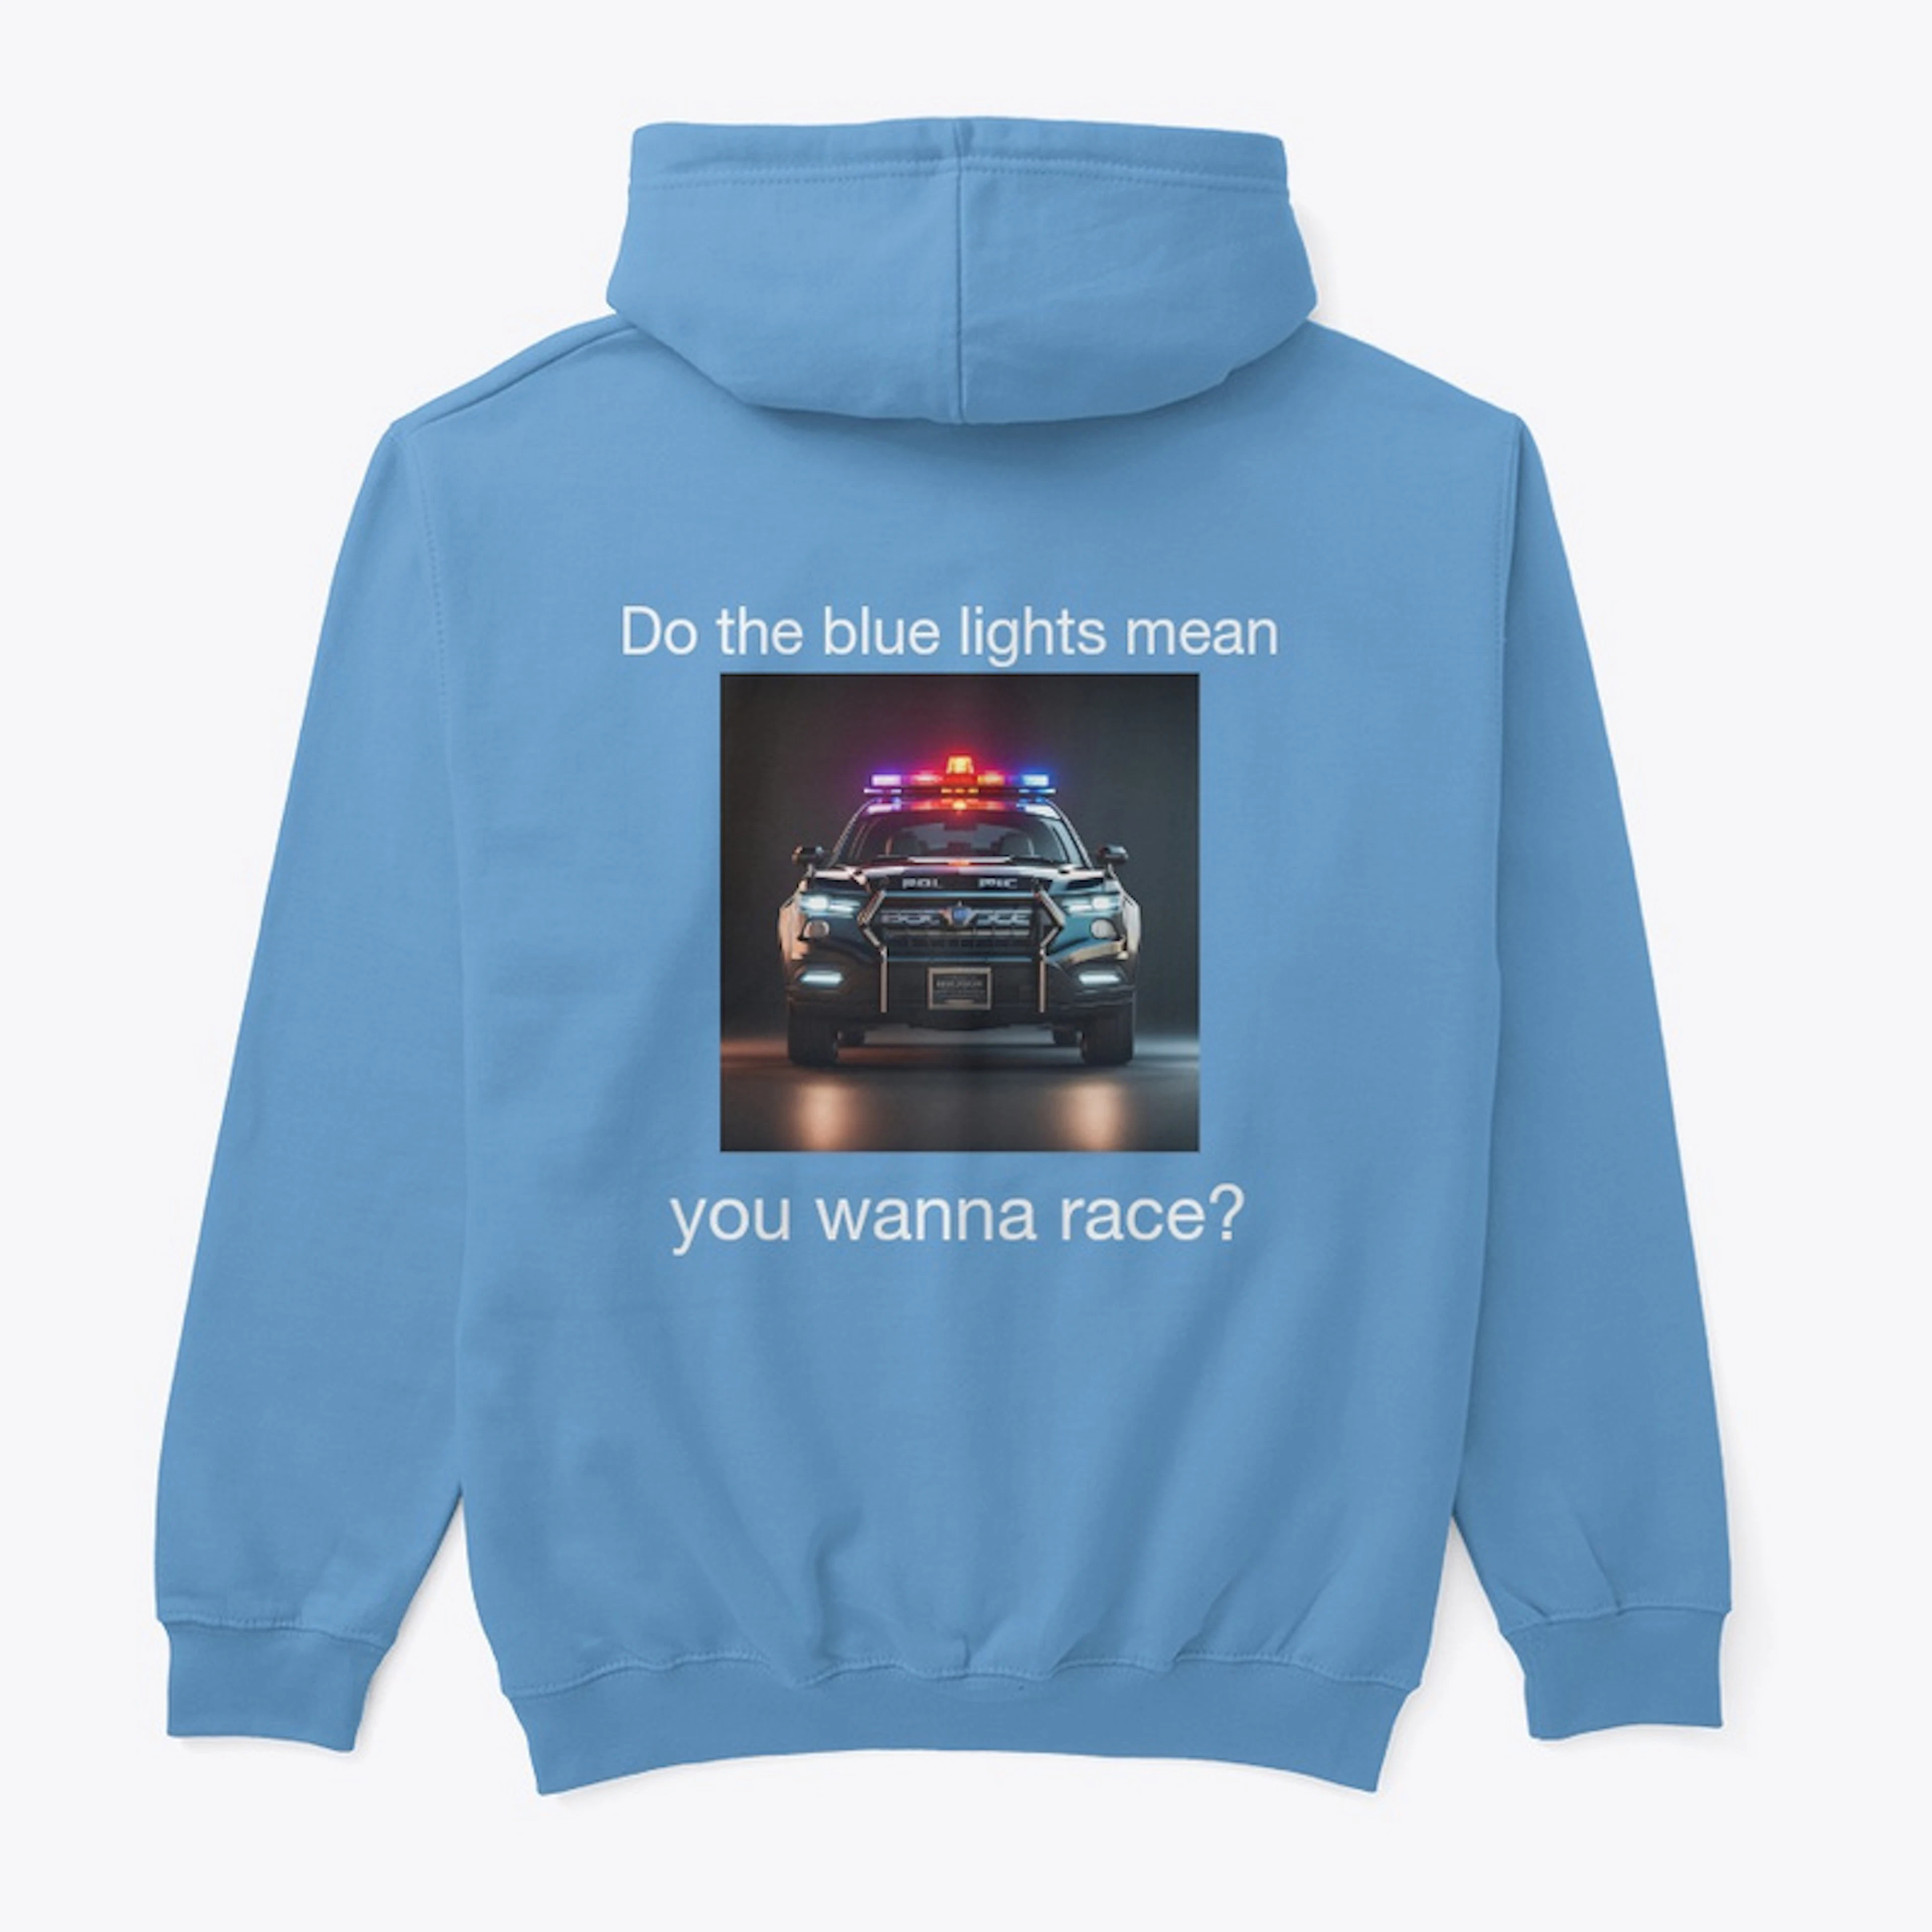 Wanna race?